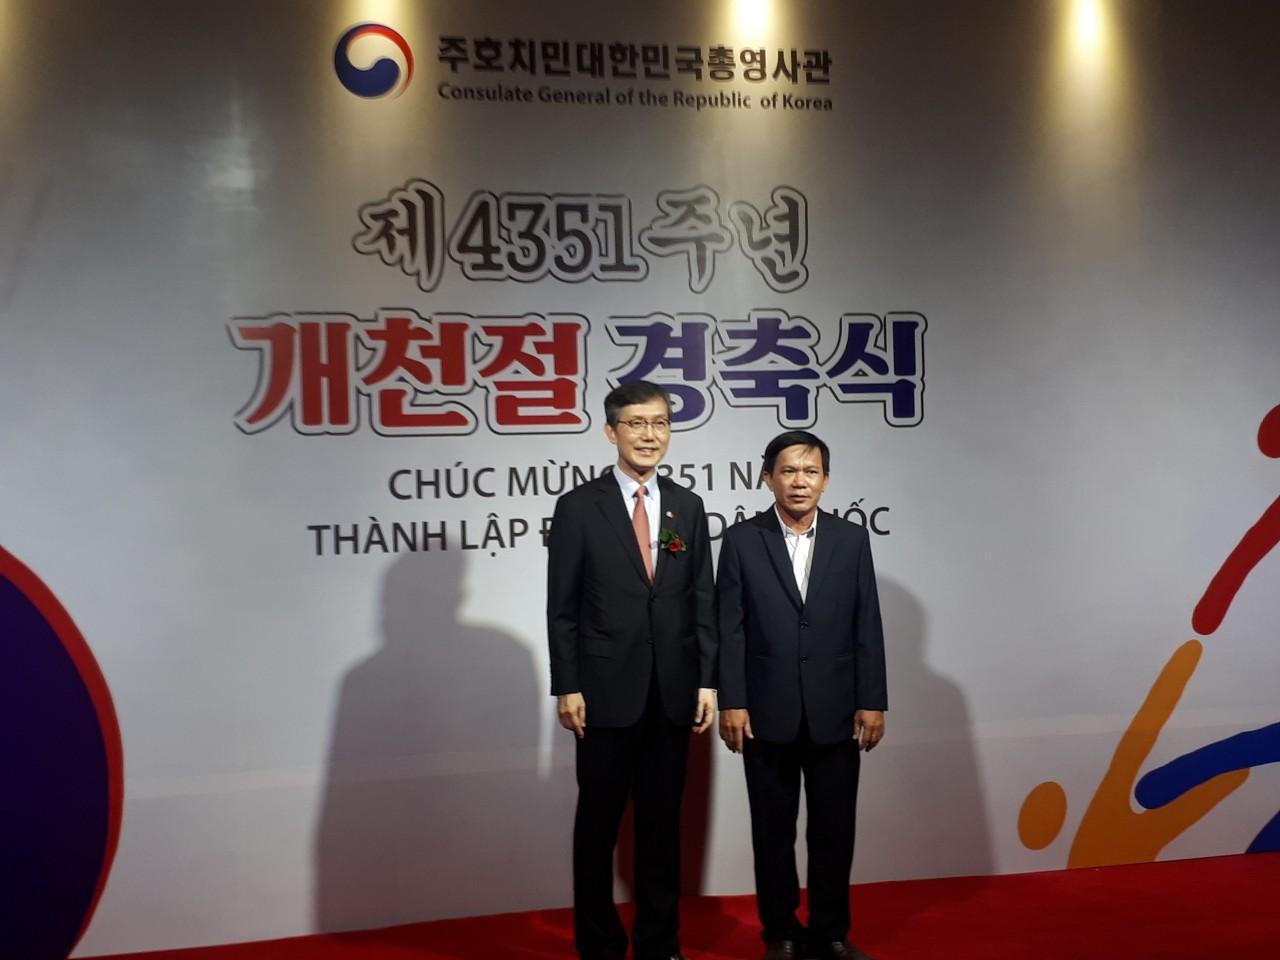 Chủ tịch Liên hiệp các tổ chức hữu nghị tỉnh Long An - Nguyễn Hữu Ngọc chúc mừng Tổng lãnh sự Hàn Quốc tại thành phố Hồ Chí Minh - Lim Jea-hoon nhân ngày Quốc  khánh Hàn Quốc tại TPHCM